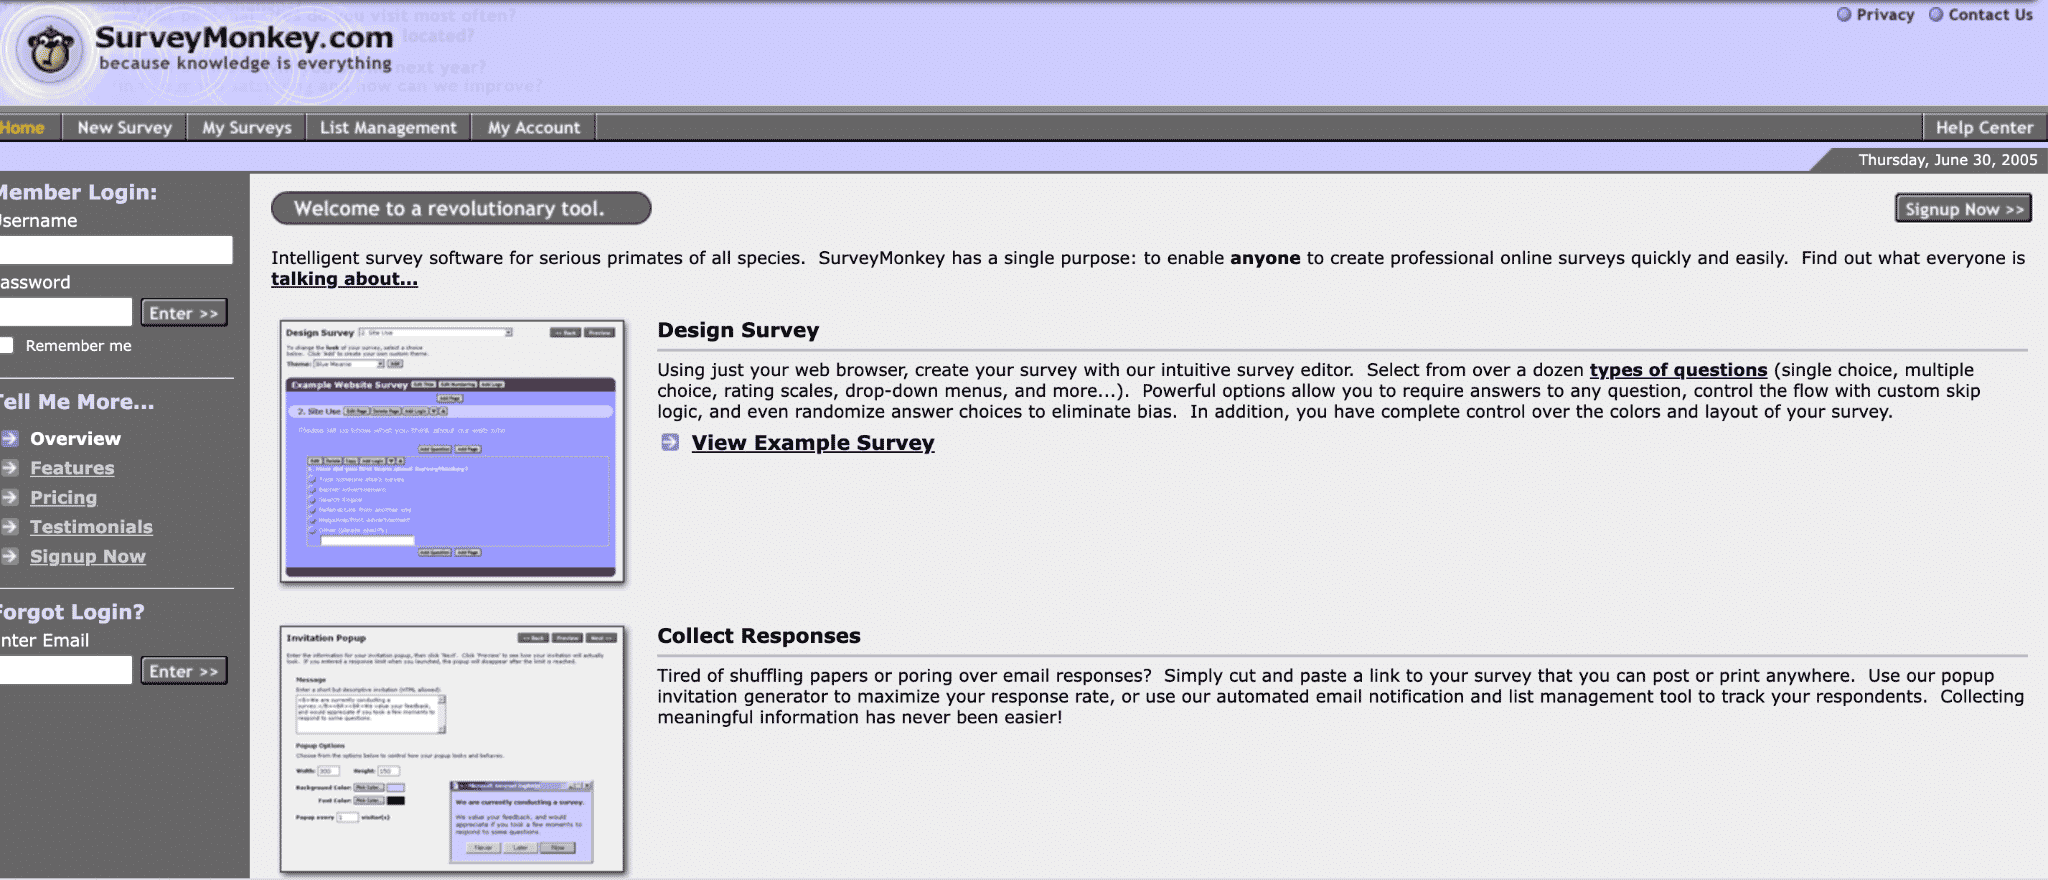 Bildschirmfoto der surveymonkey-Homepage aus dem jahr2005。